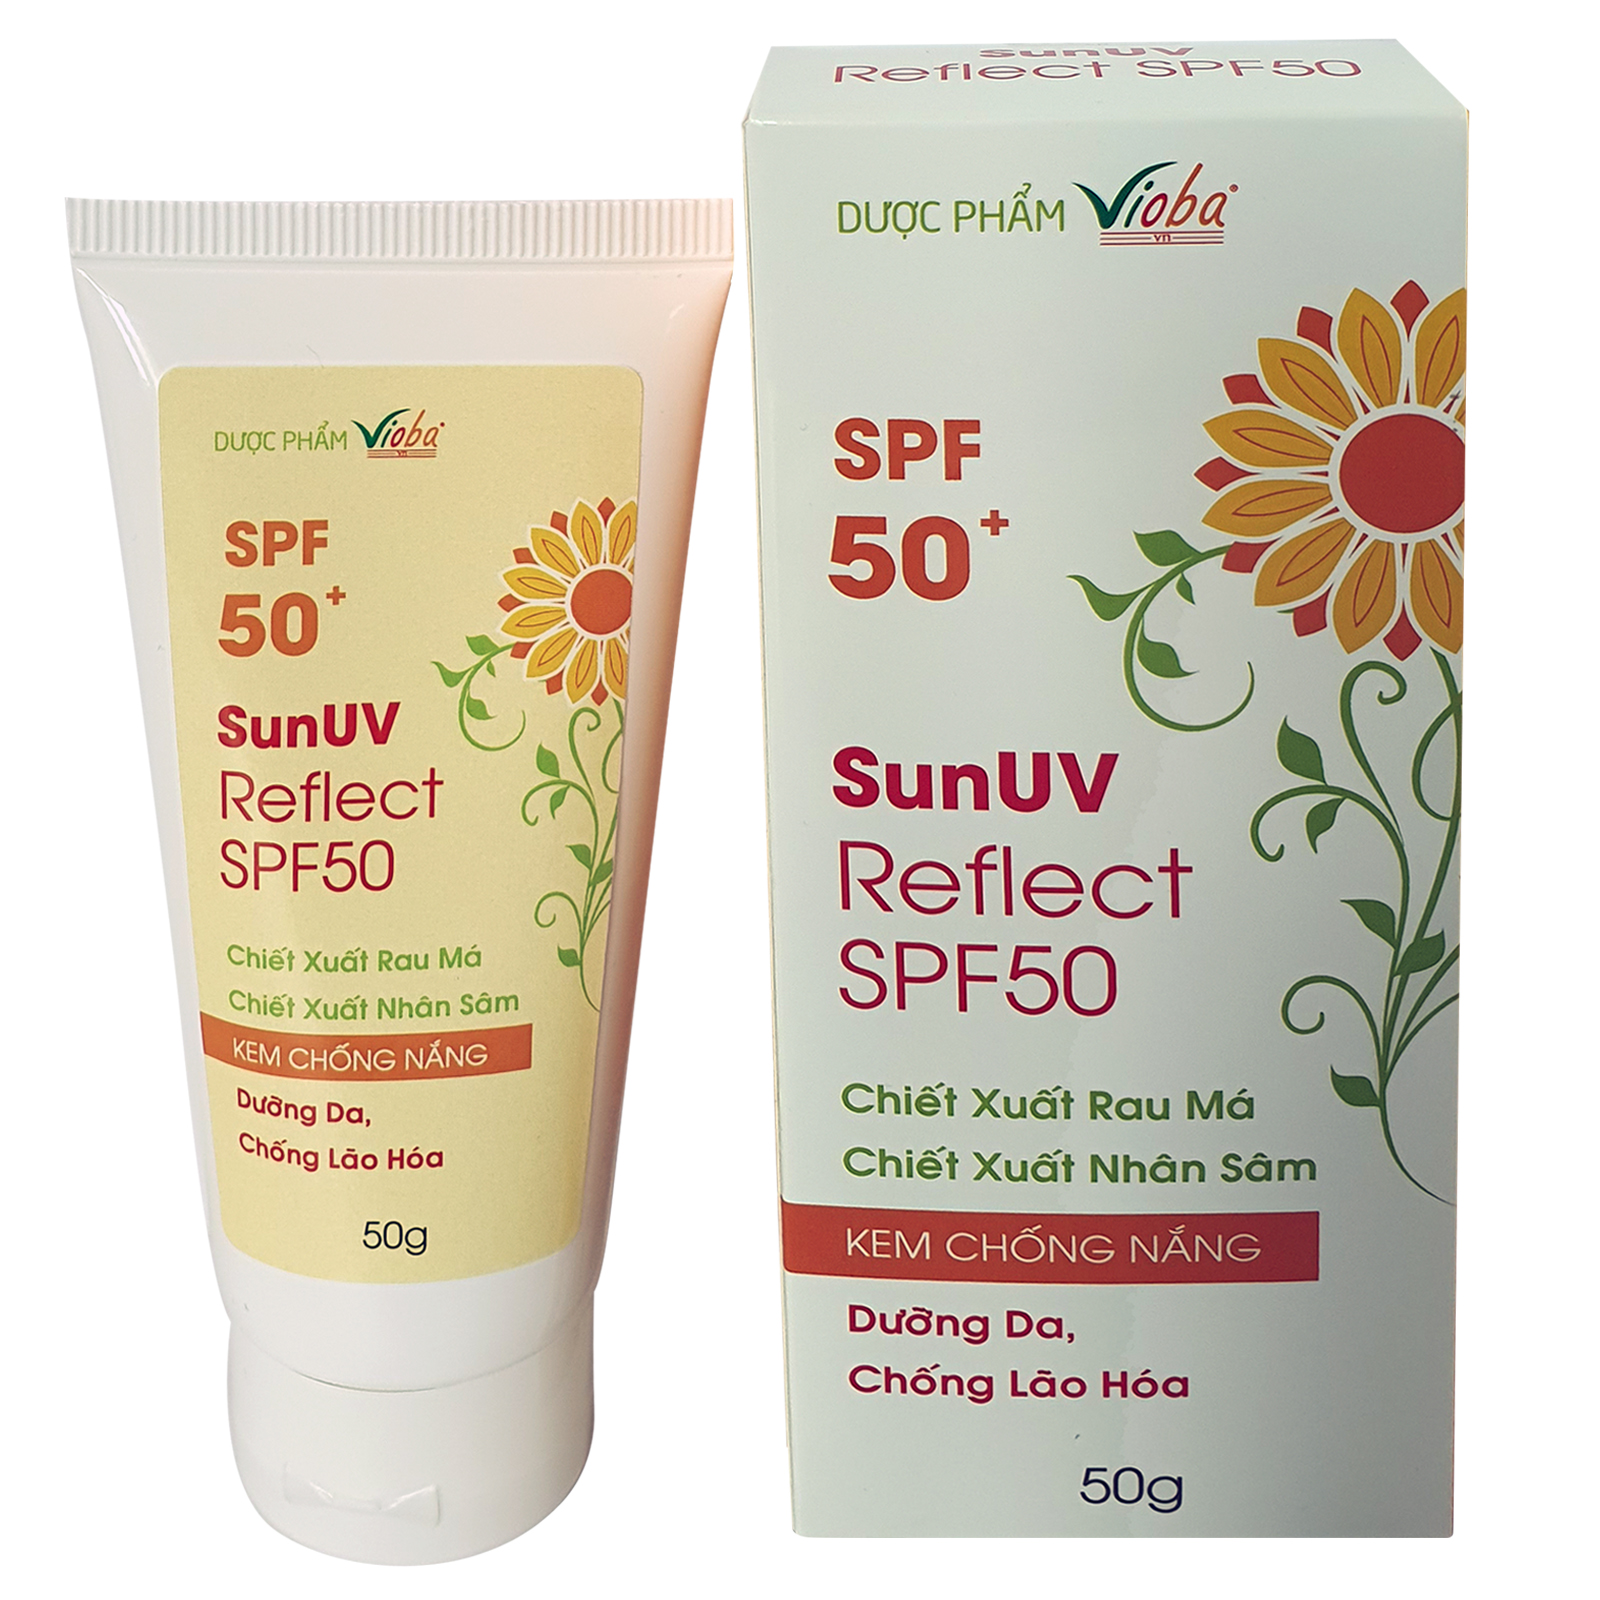 Dưỡng da, chống lão hóa chống nắng, ngăn tác hại của các tia: UVB, UVA. Góp phần làm mờ các vết: thâm, nám, tàn nhang. Kem chống nắng SunUV Reflect SPF50, tuýp 50g.